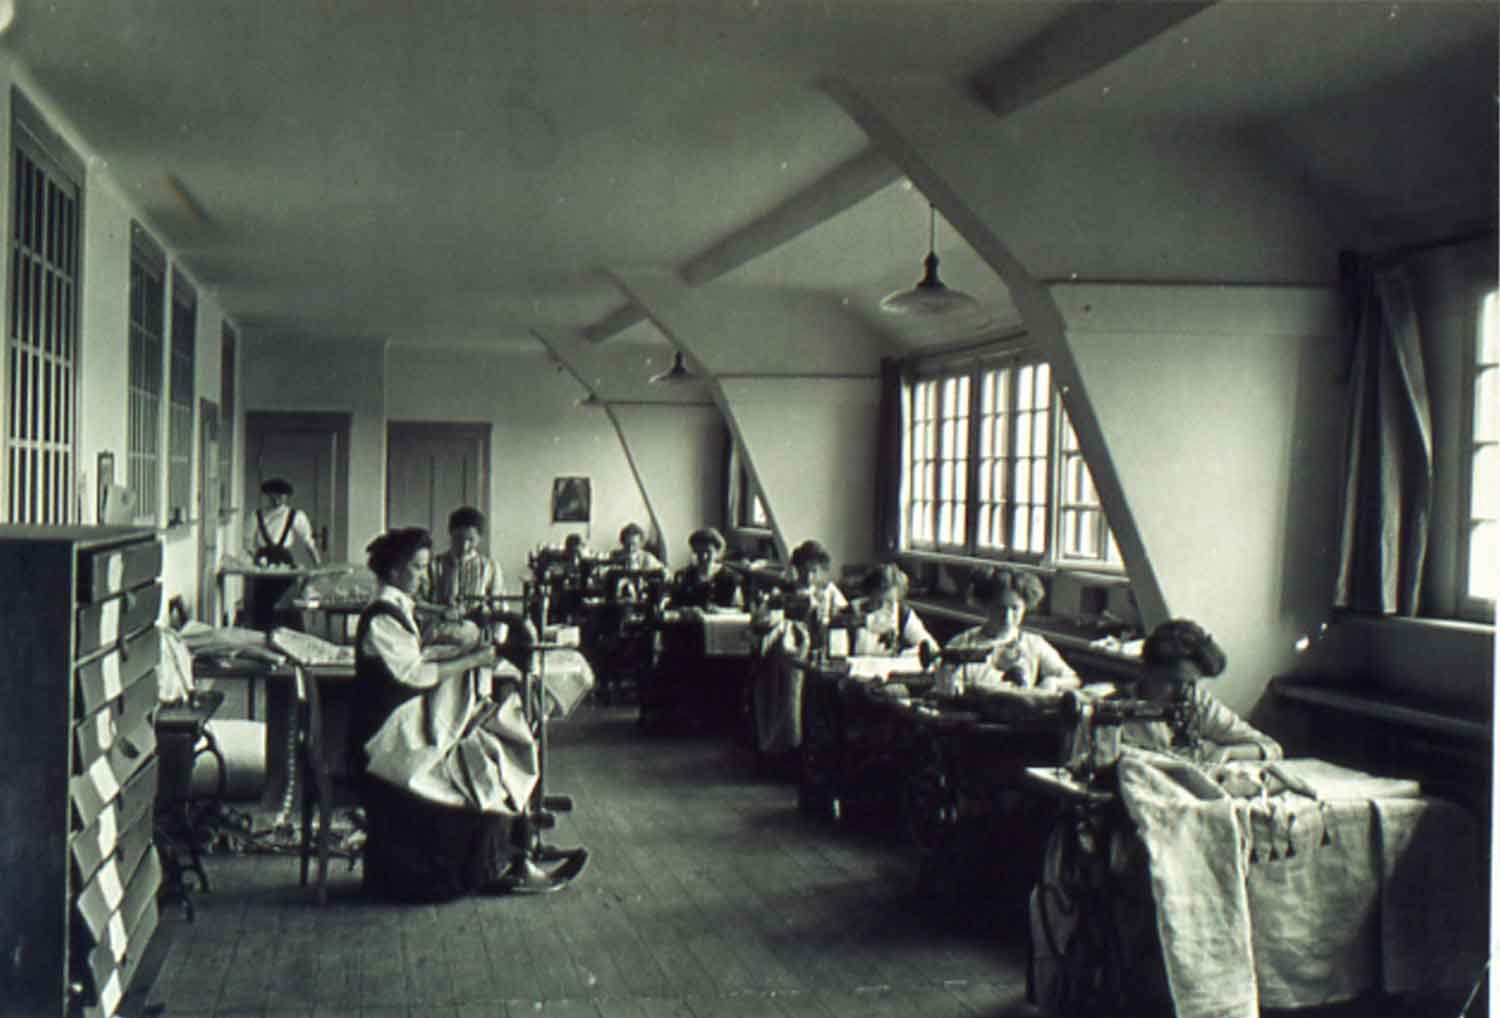 Foto, schwarz-weiß: In einem langgezogenen Raum sitzen rechts acht Frauen und links zwei Frauen hintereinander an Einzeltischen mit Nähmaschinen.